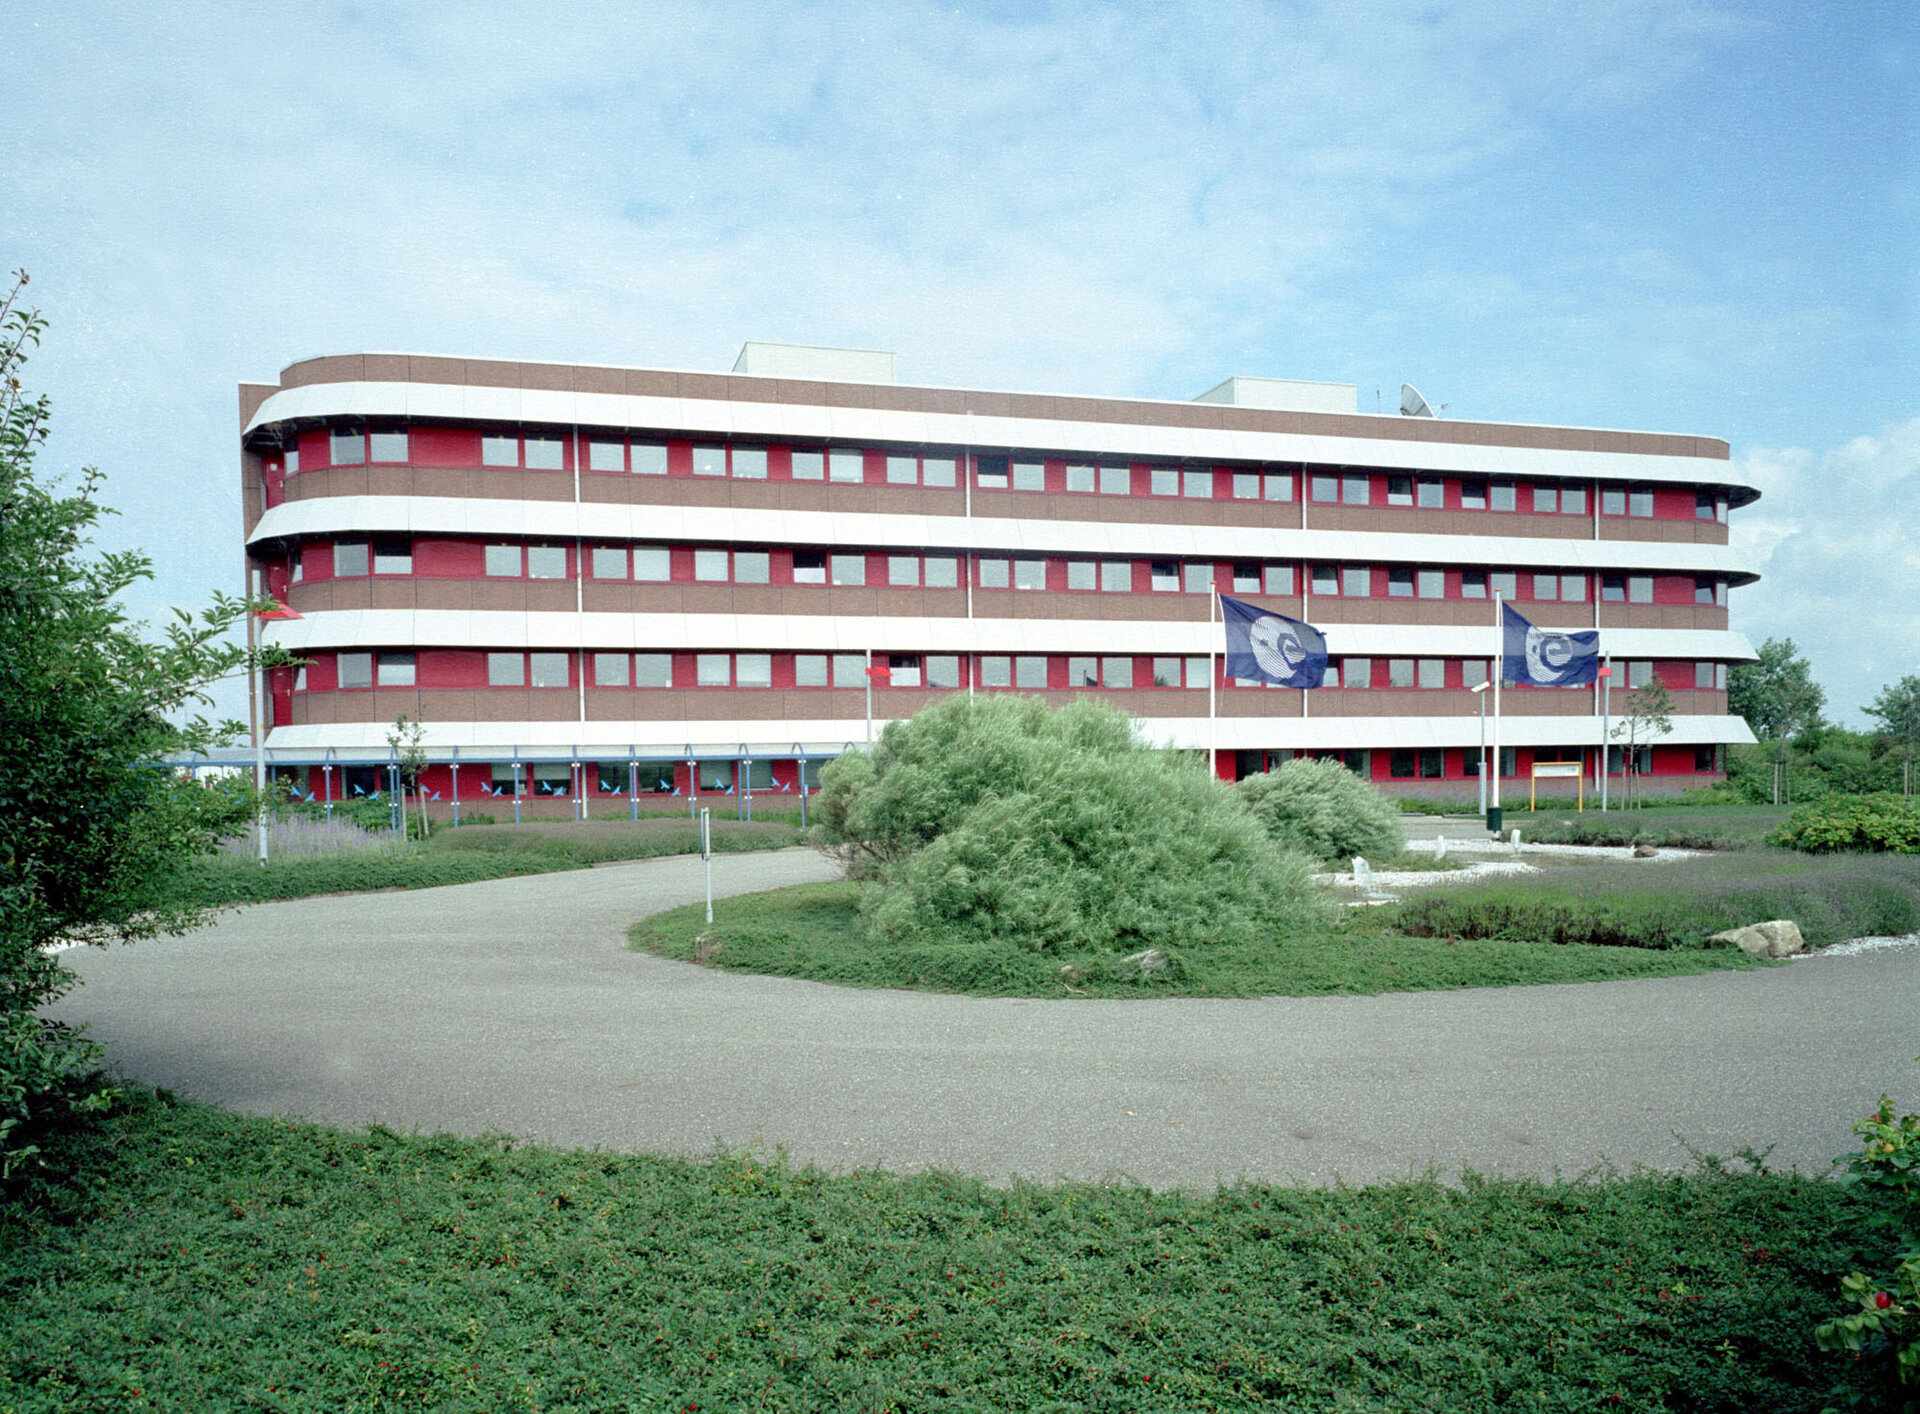 View of the Erasmus building at ESTEC